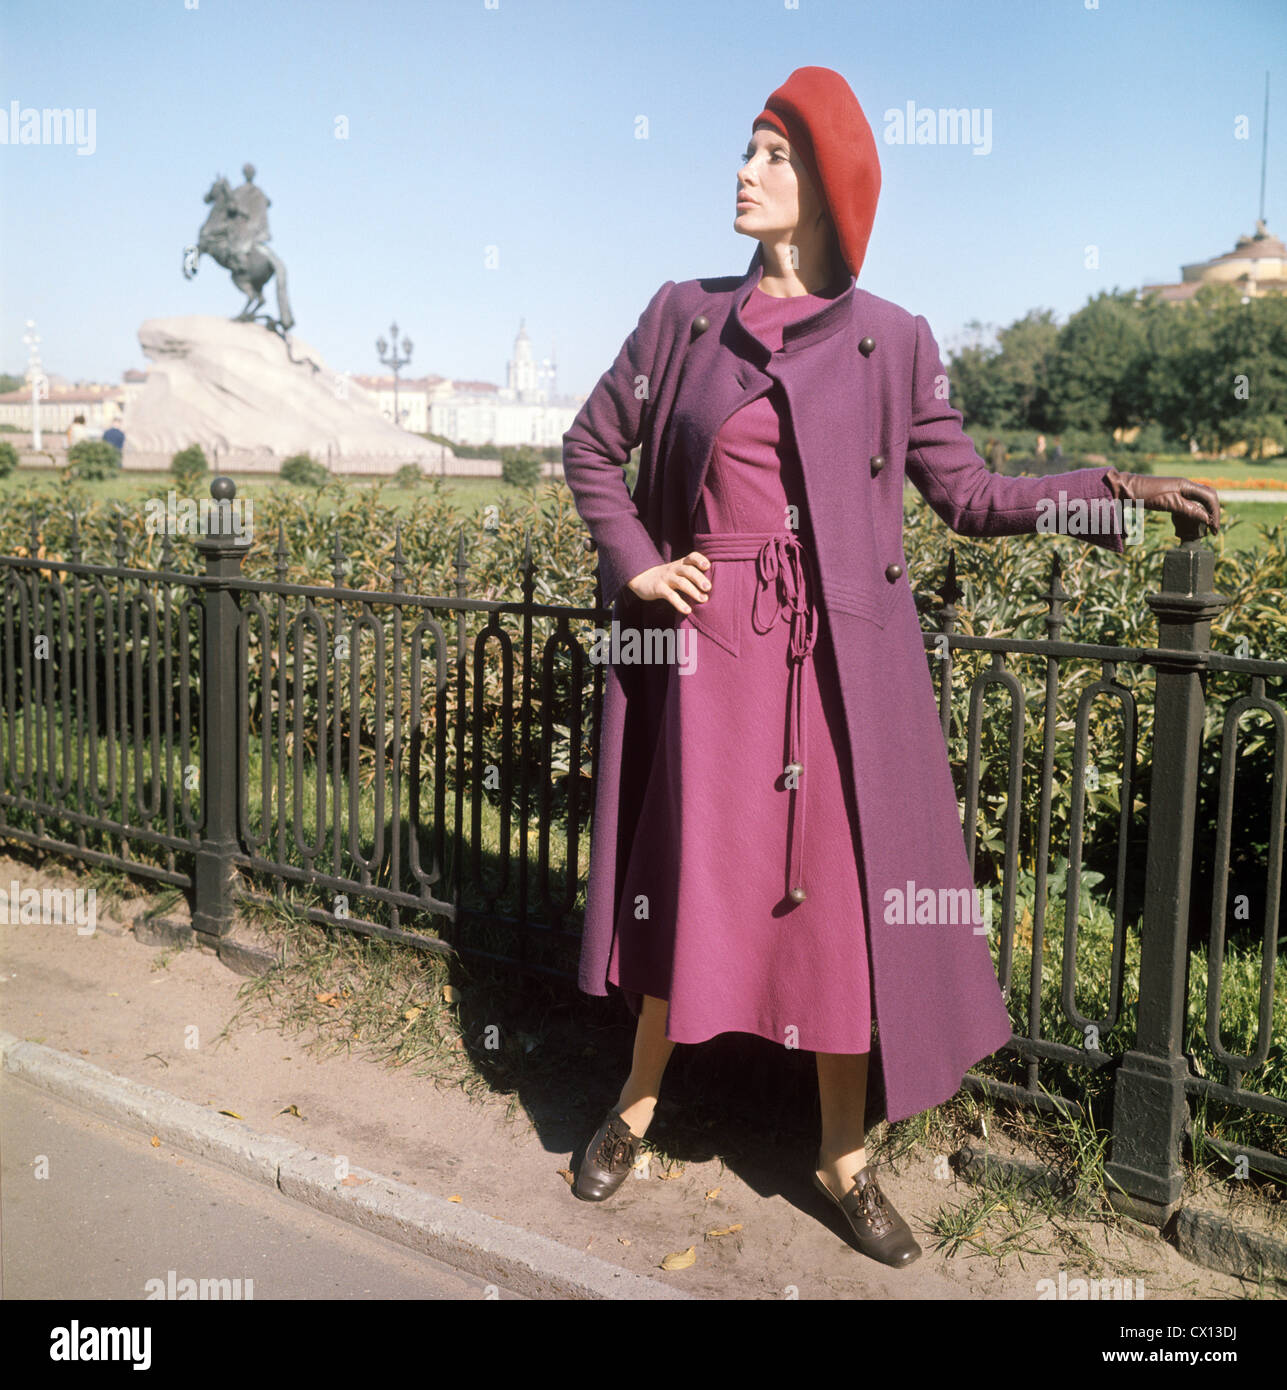 Leningrad Urss Maison De Mode De Leningrad Un Modele Montre L Habit Des Femmes Avec Un Beret Rouge Tass Photo P Fedotov Photo Stock Alamy